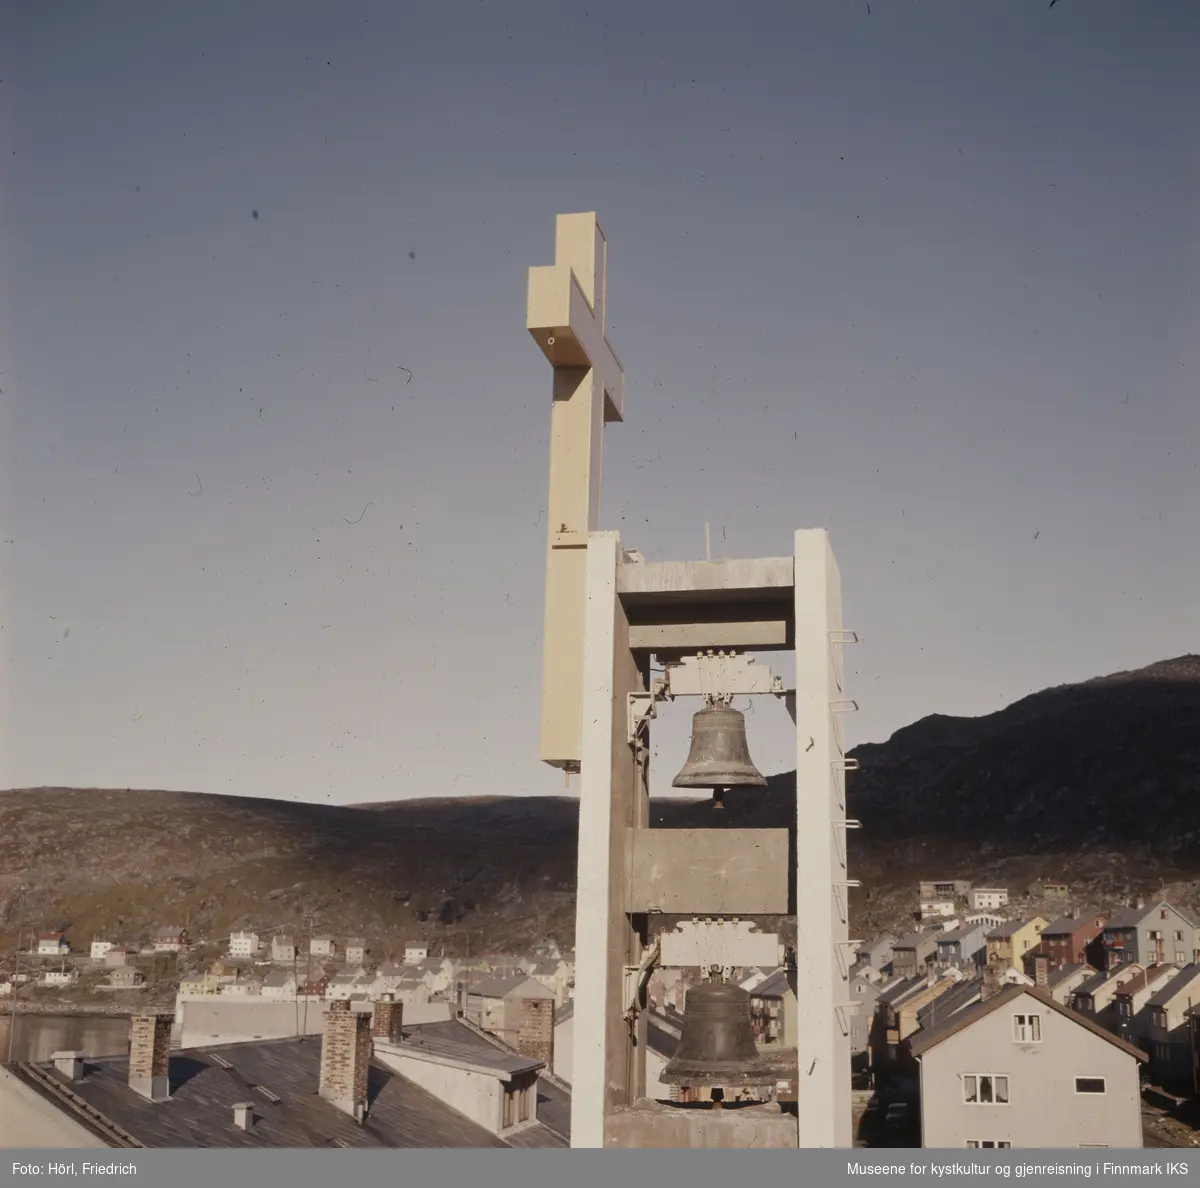 Det slanke klokketårnet til Den katolske kirke St. Mikael i Hammerfest har reist seg over gjenreisningsbyen. Klokkene fra den gamle Hammerfest kirken er hengt opp igjen. Gjennom heldige omstendighetene kunne de reddes for smelteovnene. Tårnet er pyntet med et fire meter høyt, lyssatt kors. I bakgrunnen ser man Mollafjellet.